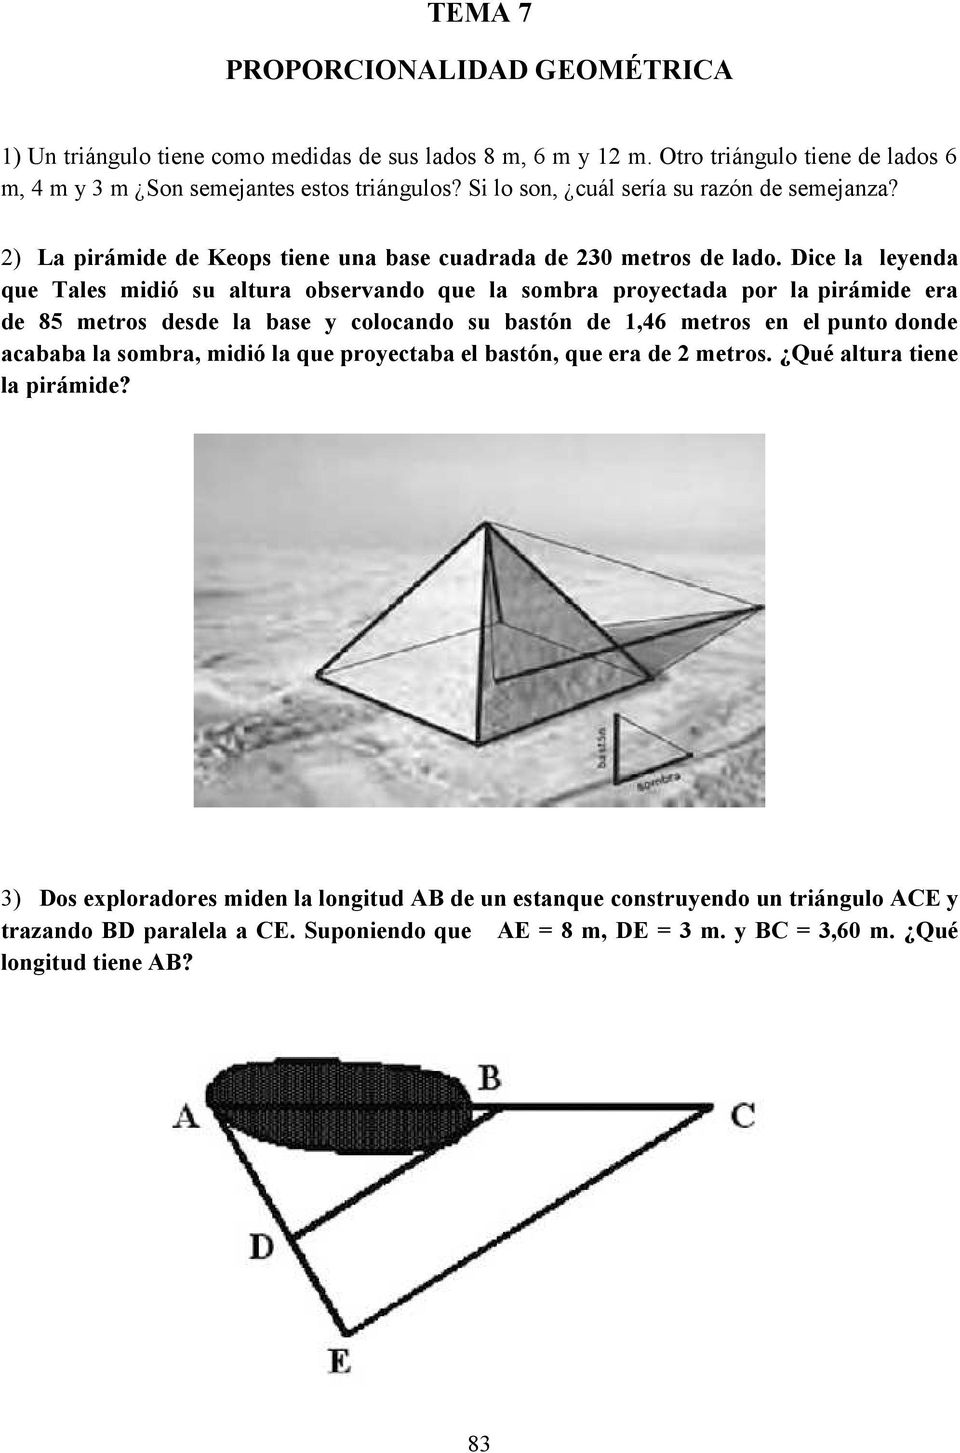 Dice la leyenda que Tales midió su altura observando que la sombra proyectada por la pirámide era de 85 metros desde la base y colocando su bastón de 1,46 metros en el punto donde acababa la